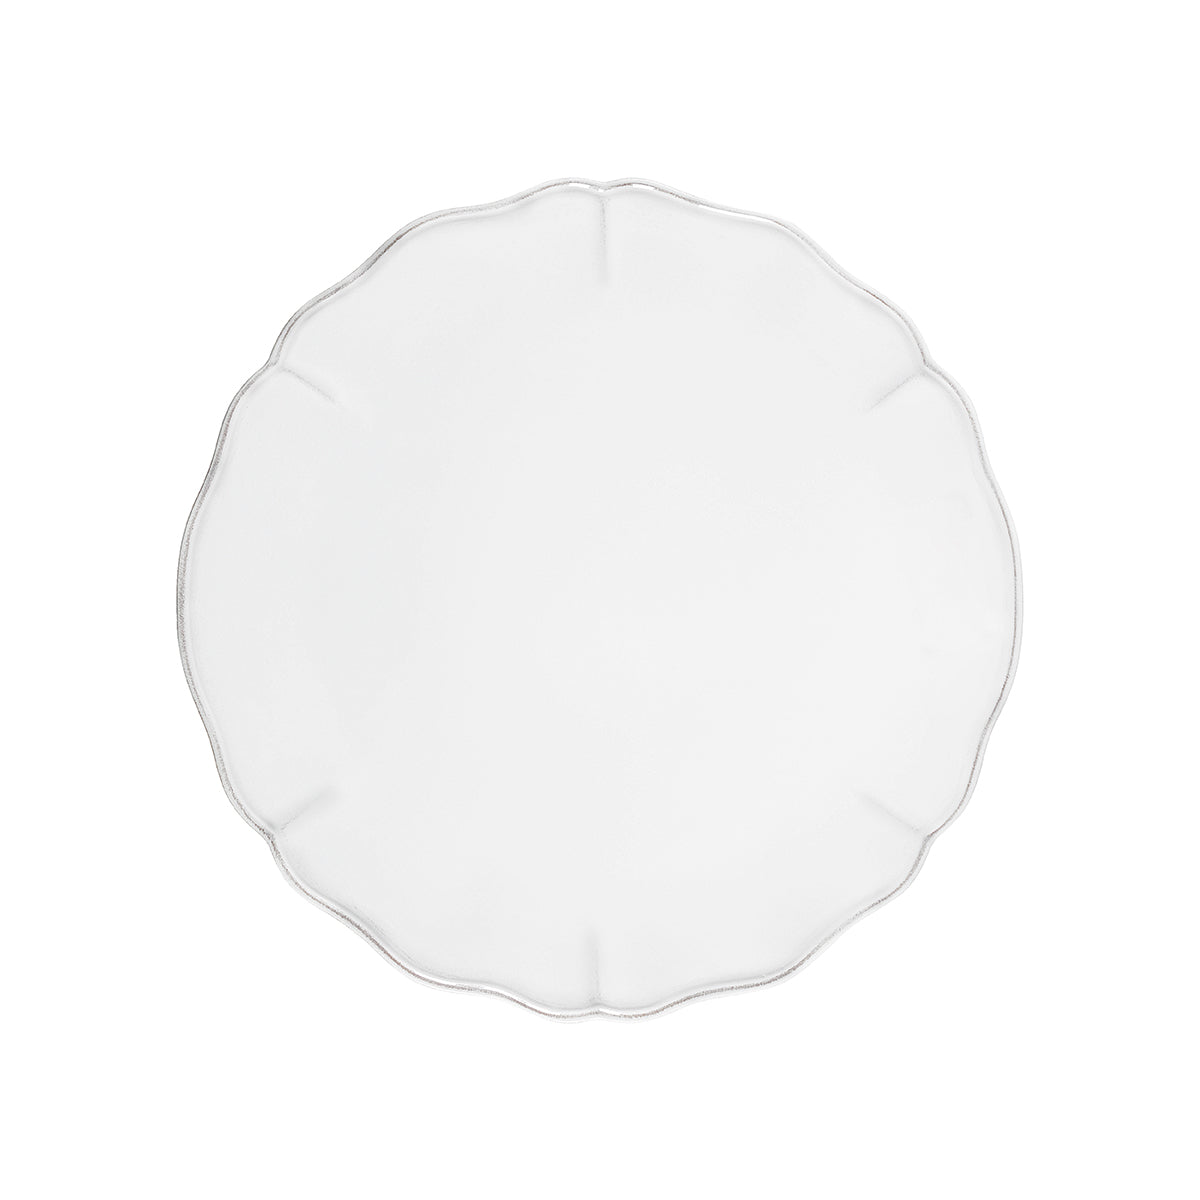 300001 Costa Nova Alentejo White Round Platter 340mm Tomkin Australia Hospitality Supplies